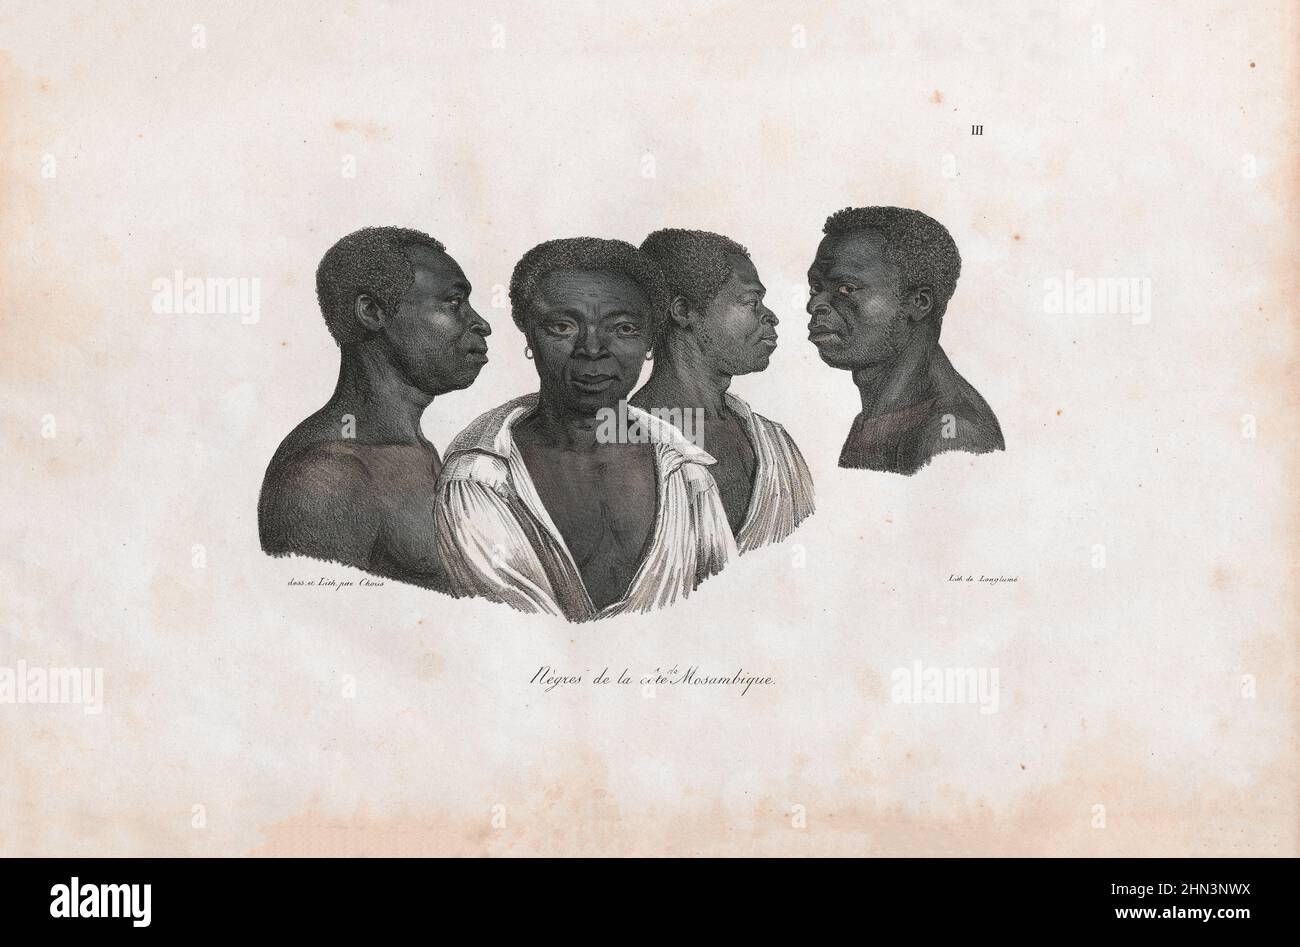 Farblithographie von Porträts von Küstenbewohnern in Mosambik. 1822, von Louis Choris. Stockfoto